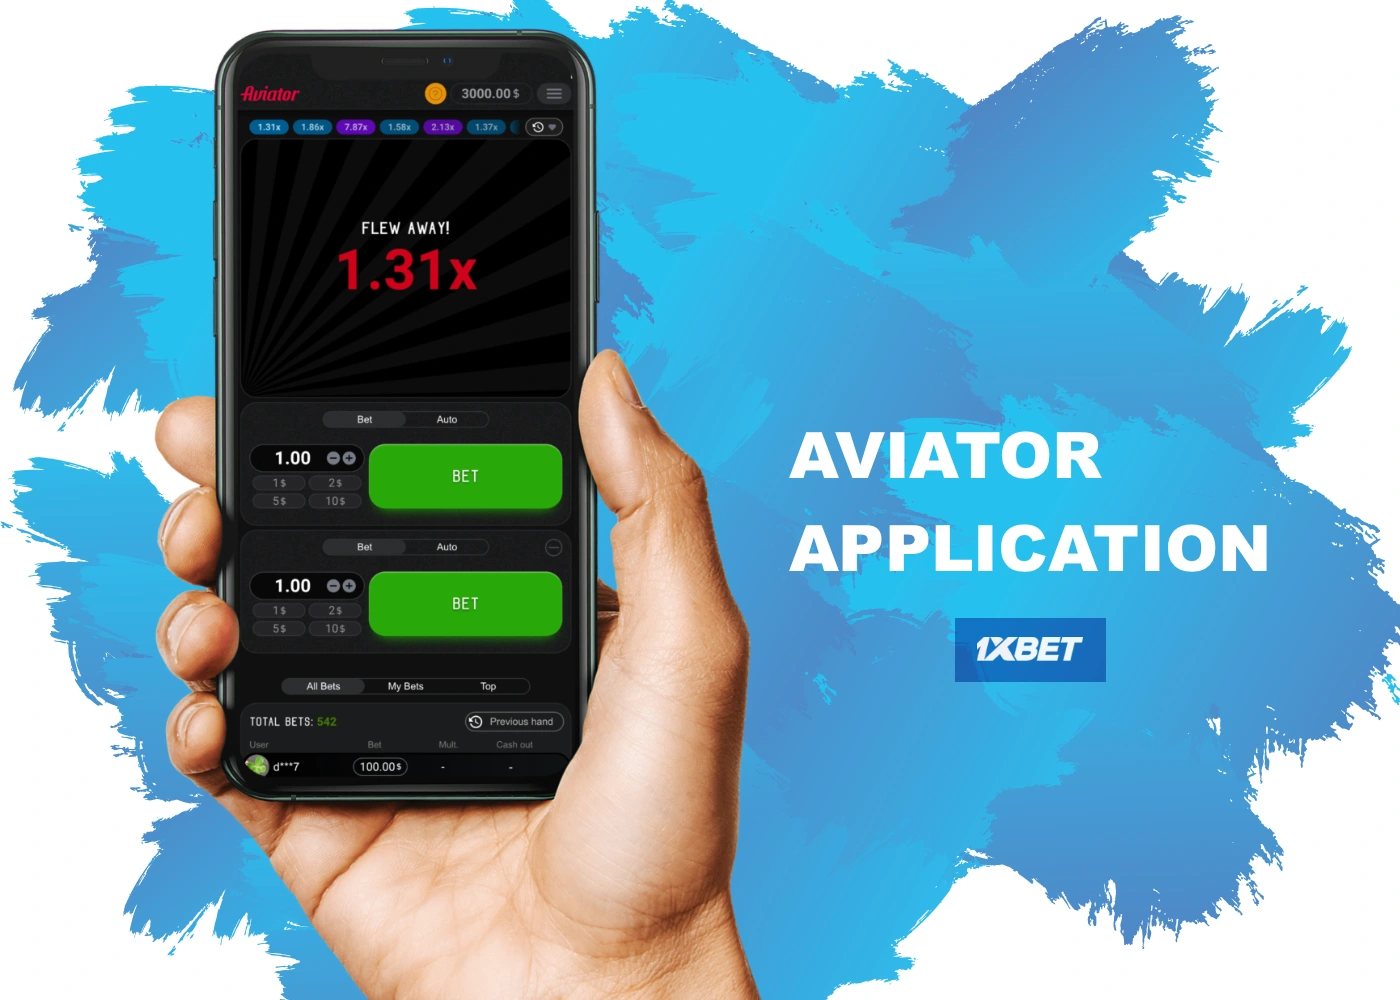 Aplikasi 1xBet Aviator memungkinkan Anda bermain di mana saja, kapan saja